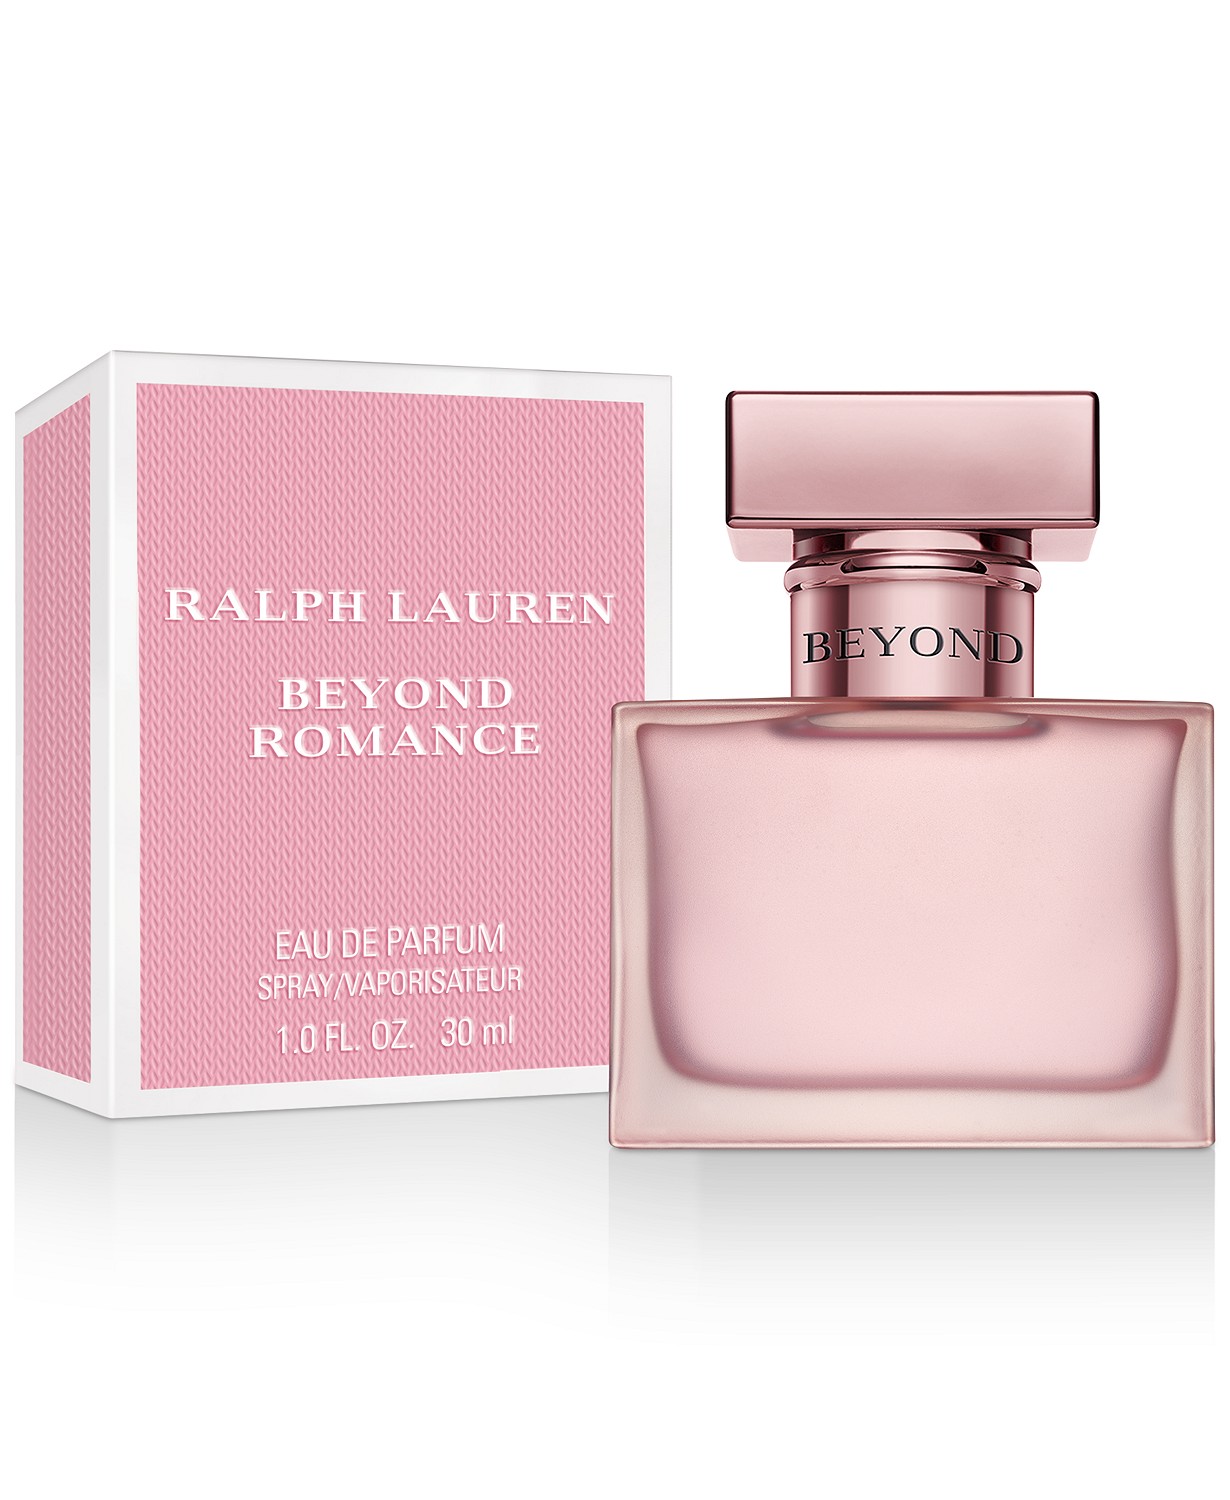 Beyond Romance Ralph Lauren аромат — новый аромат для женщин 2019